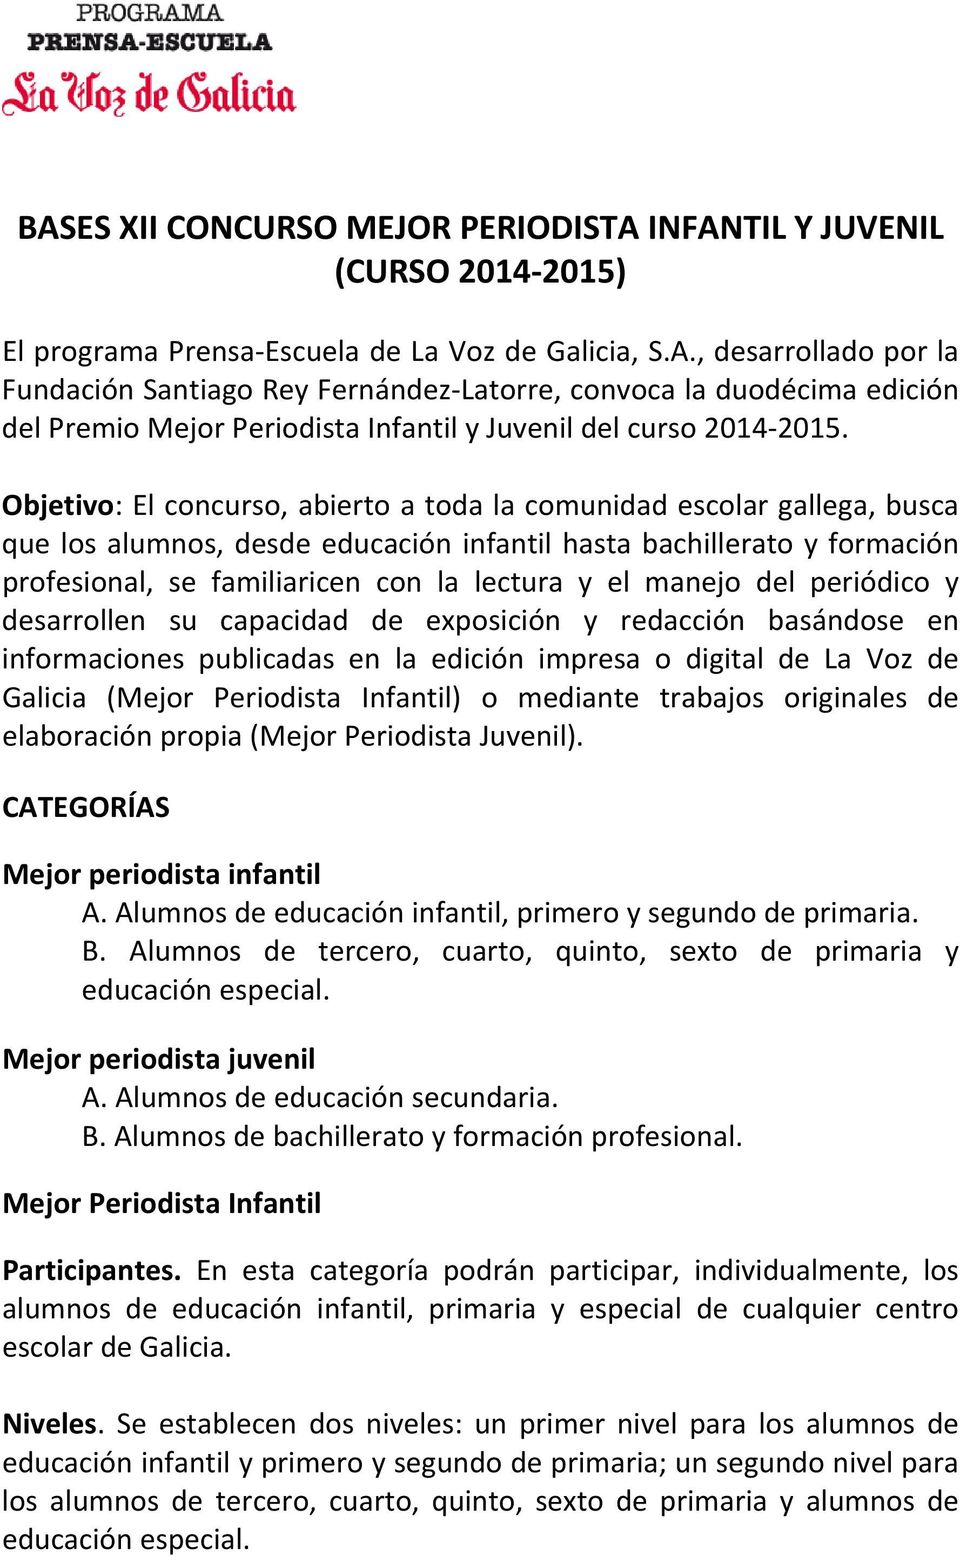 manejo del periódico y desarrollen su capacidad de exposición y redacción basándose en informaciones publicadas en la edición impresa o digital de La Voz de Galicia (Mejor Periodista Infantil) o